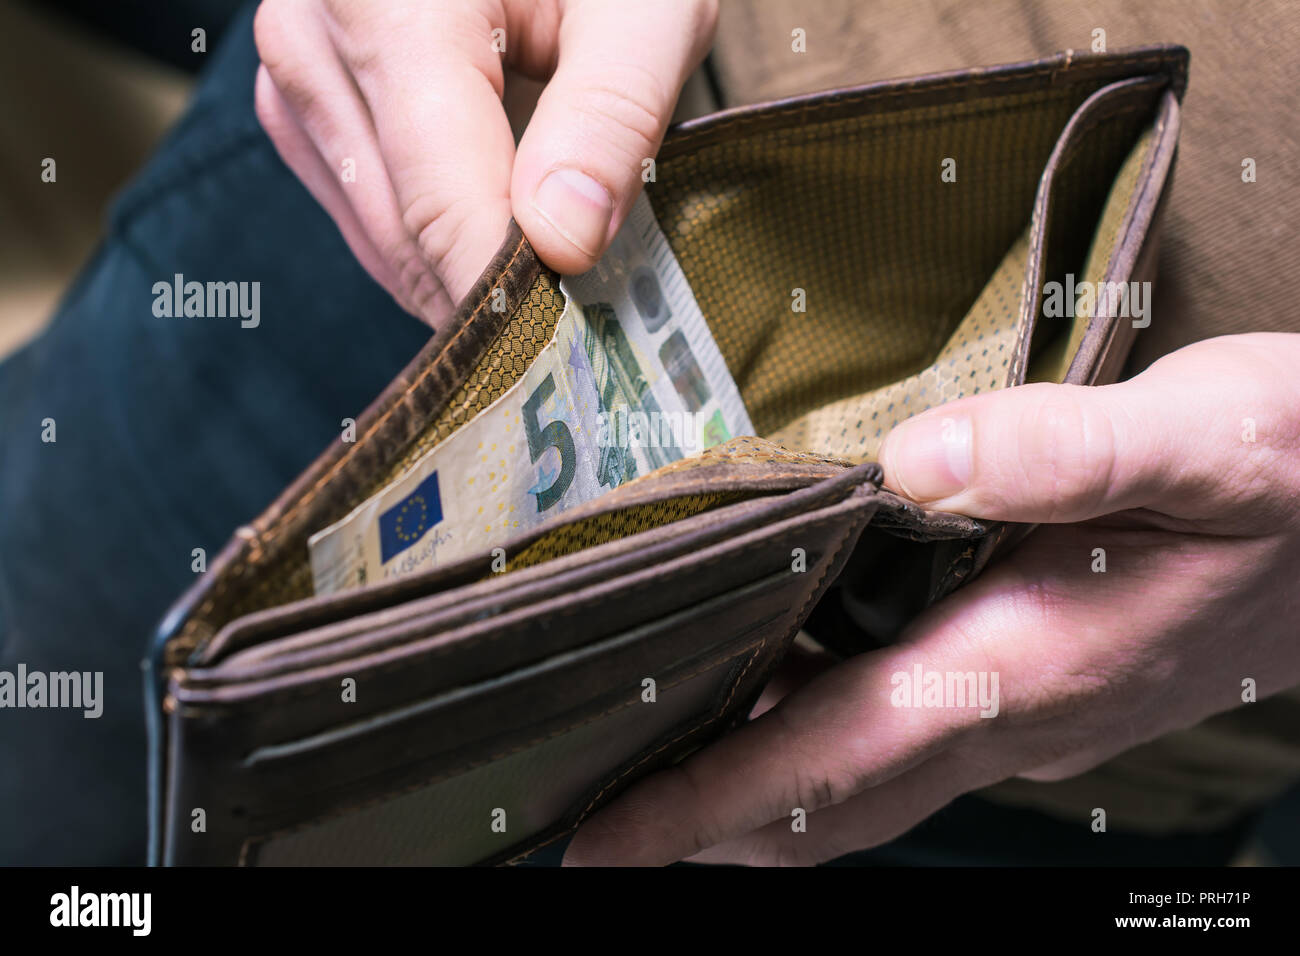 Homme montrant les 5 euros dans son porte-monnaie - Pauvre homme Concept  Photo Stock - Alamy